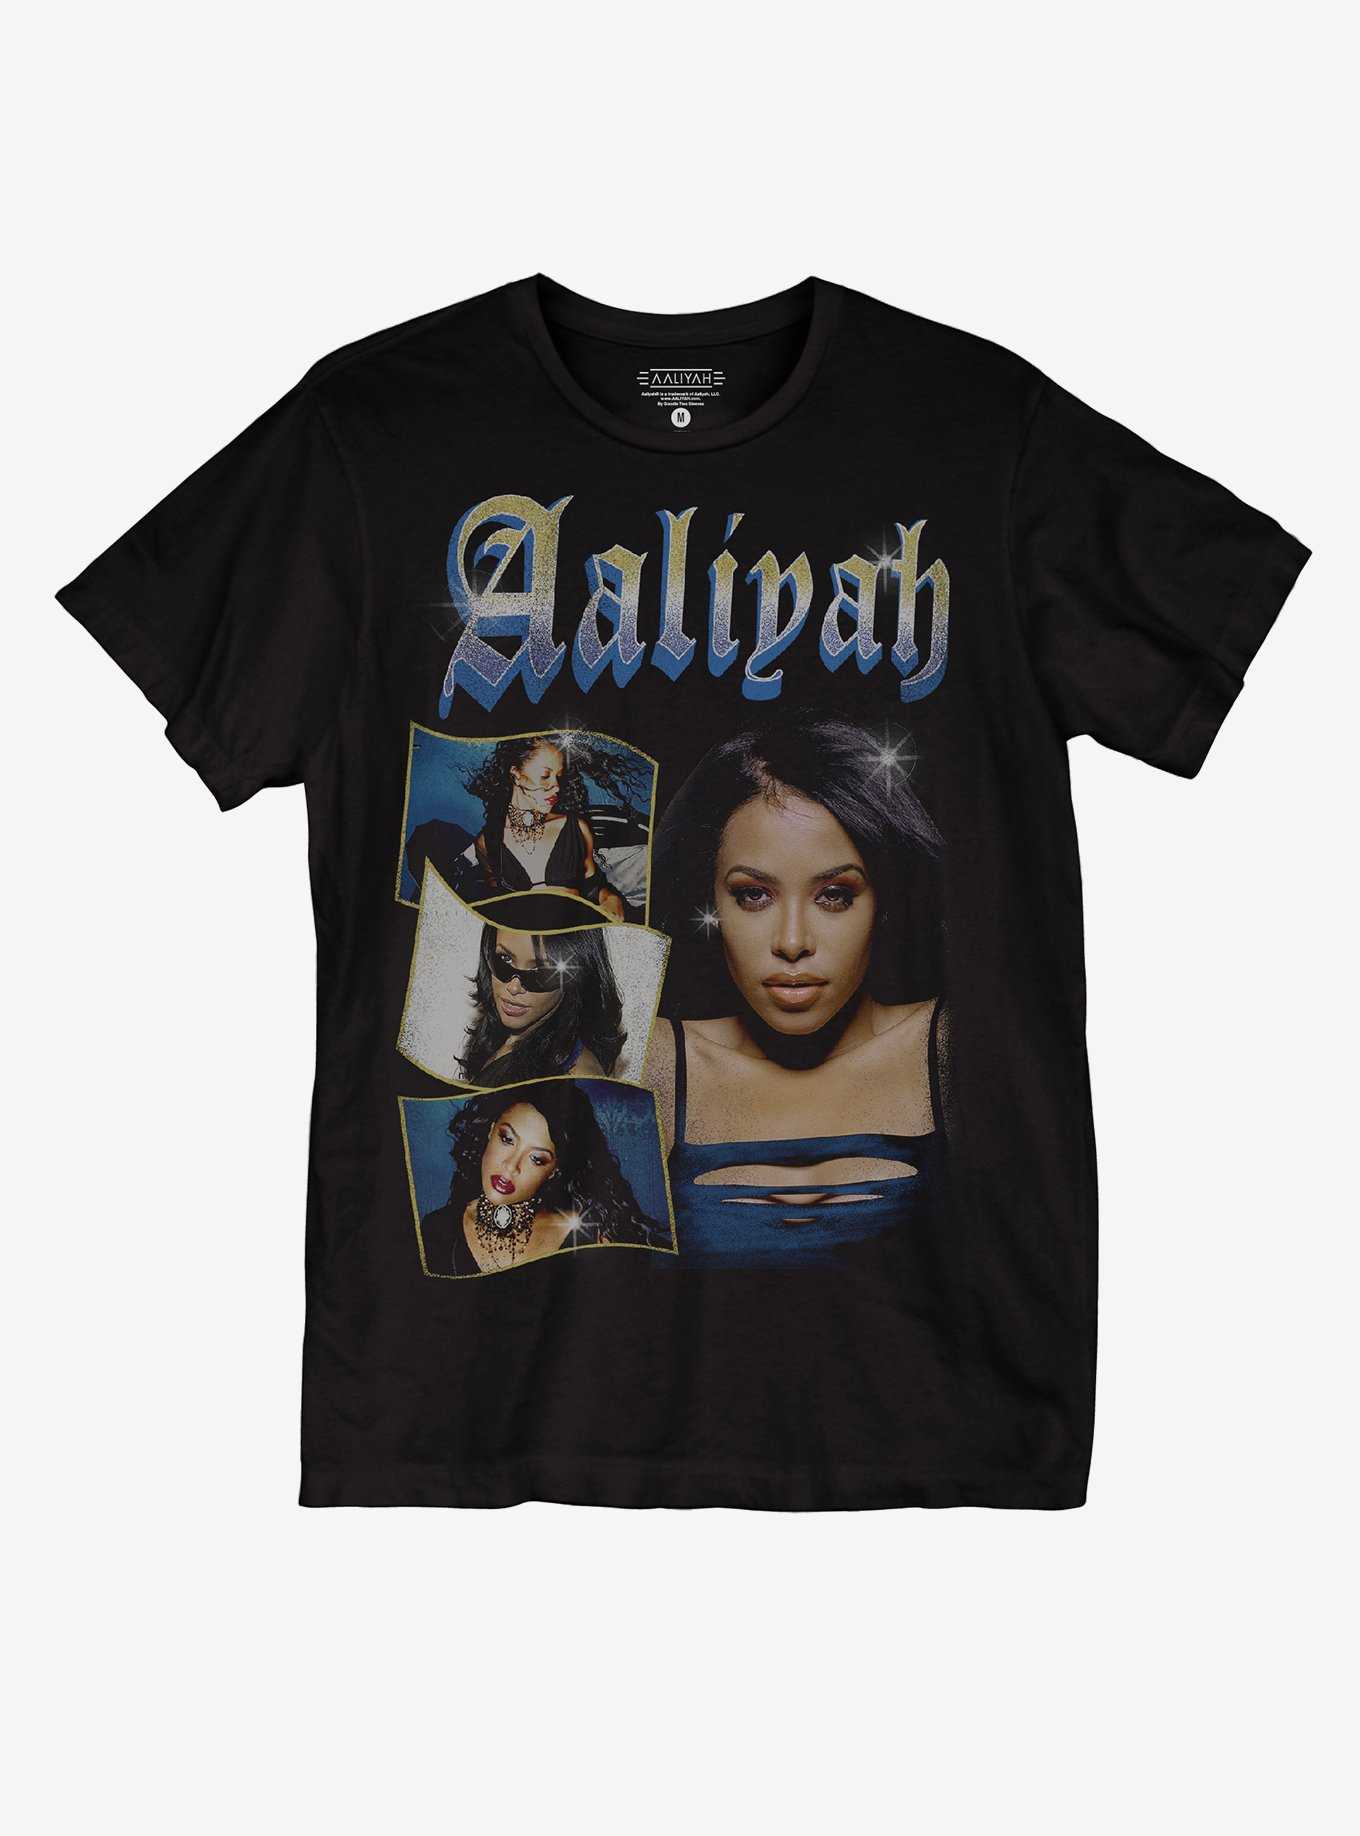 Aaliyah Glitter Collage Boyfriend Fit Girls T-Shirt, , hi-res